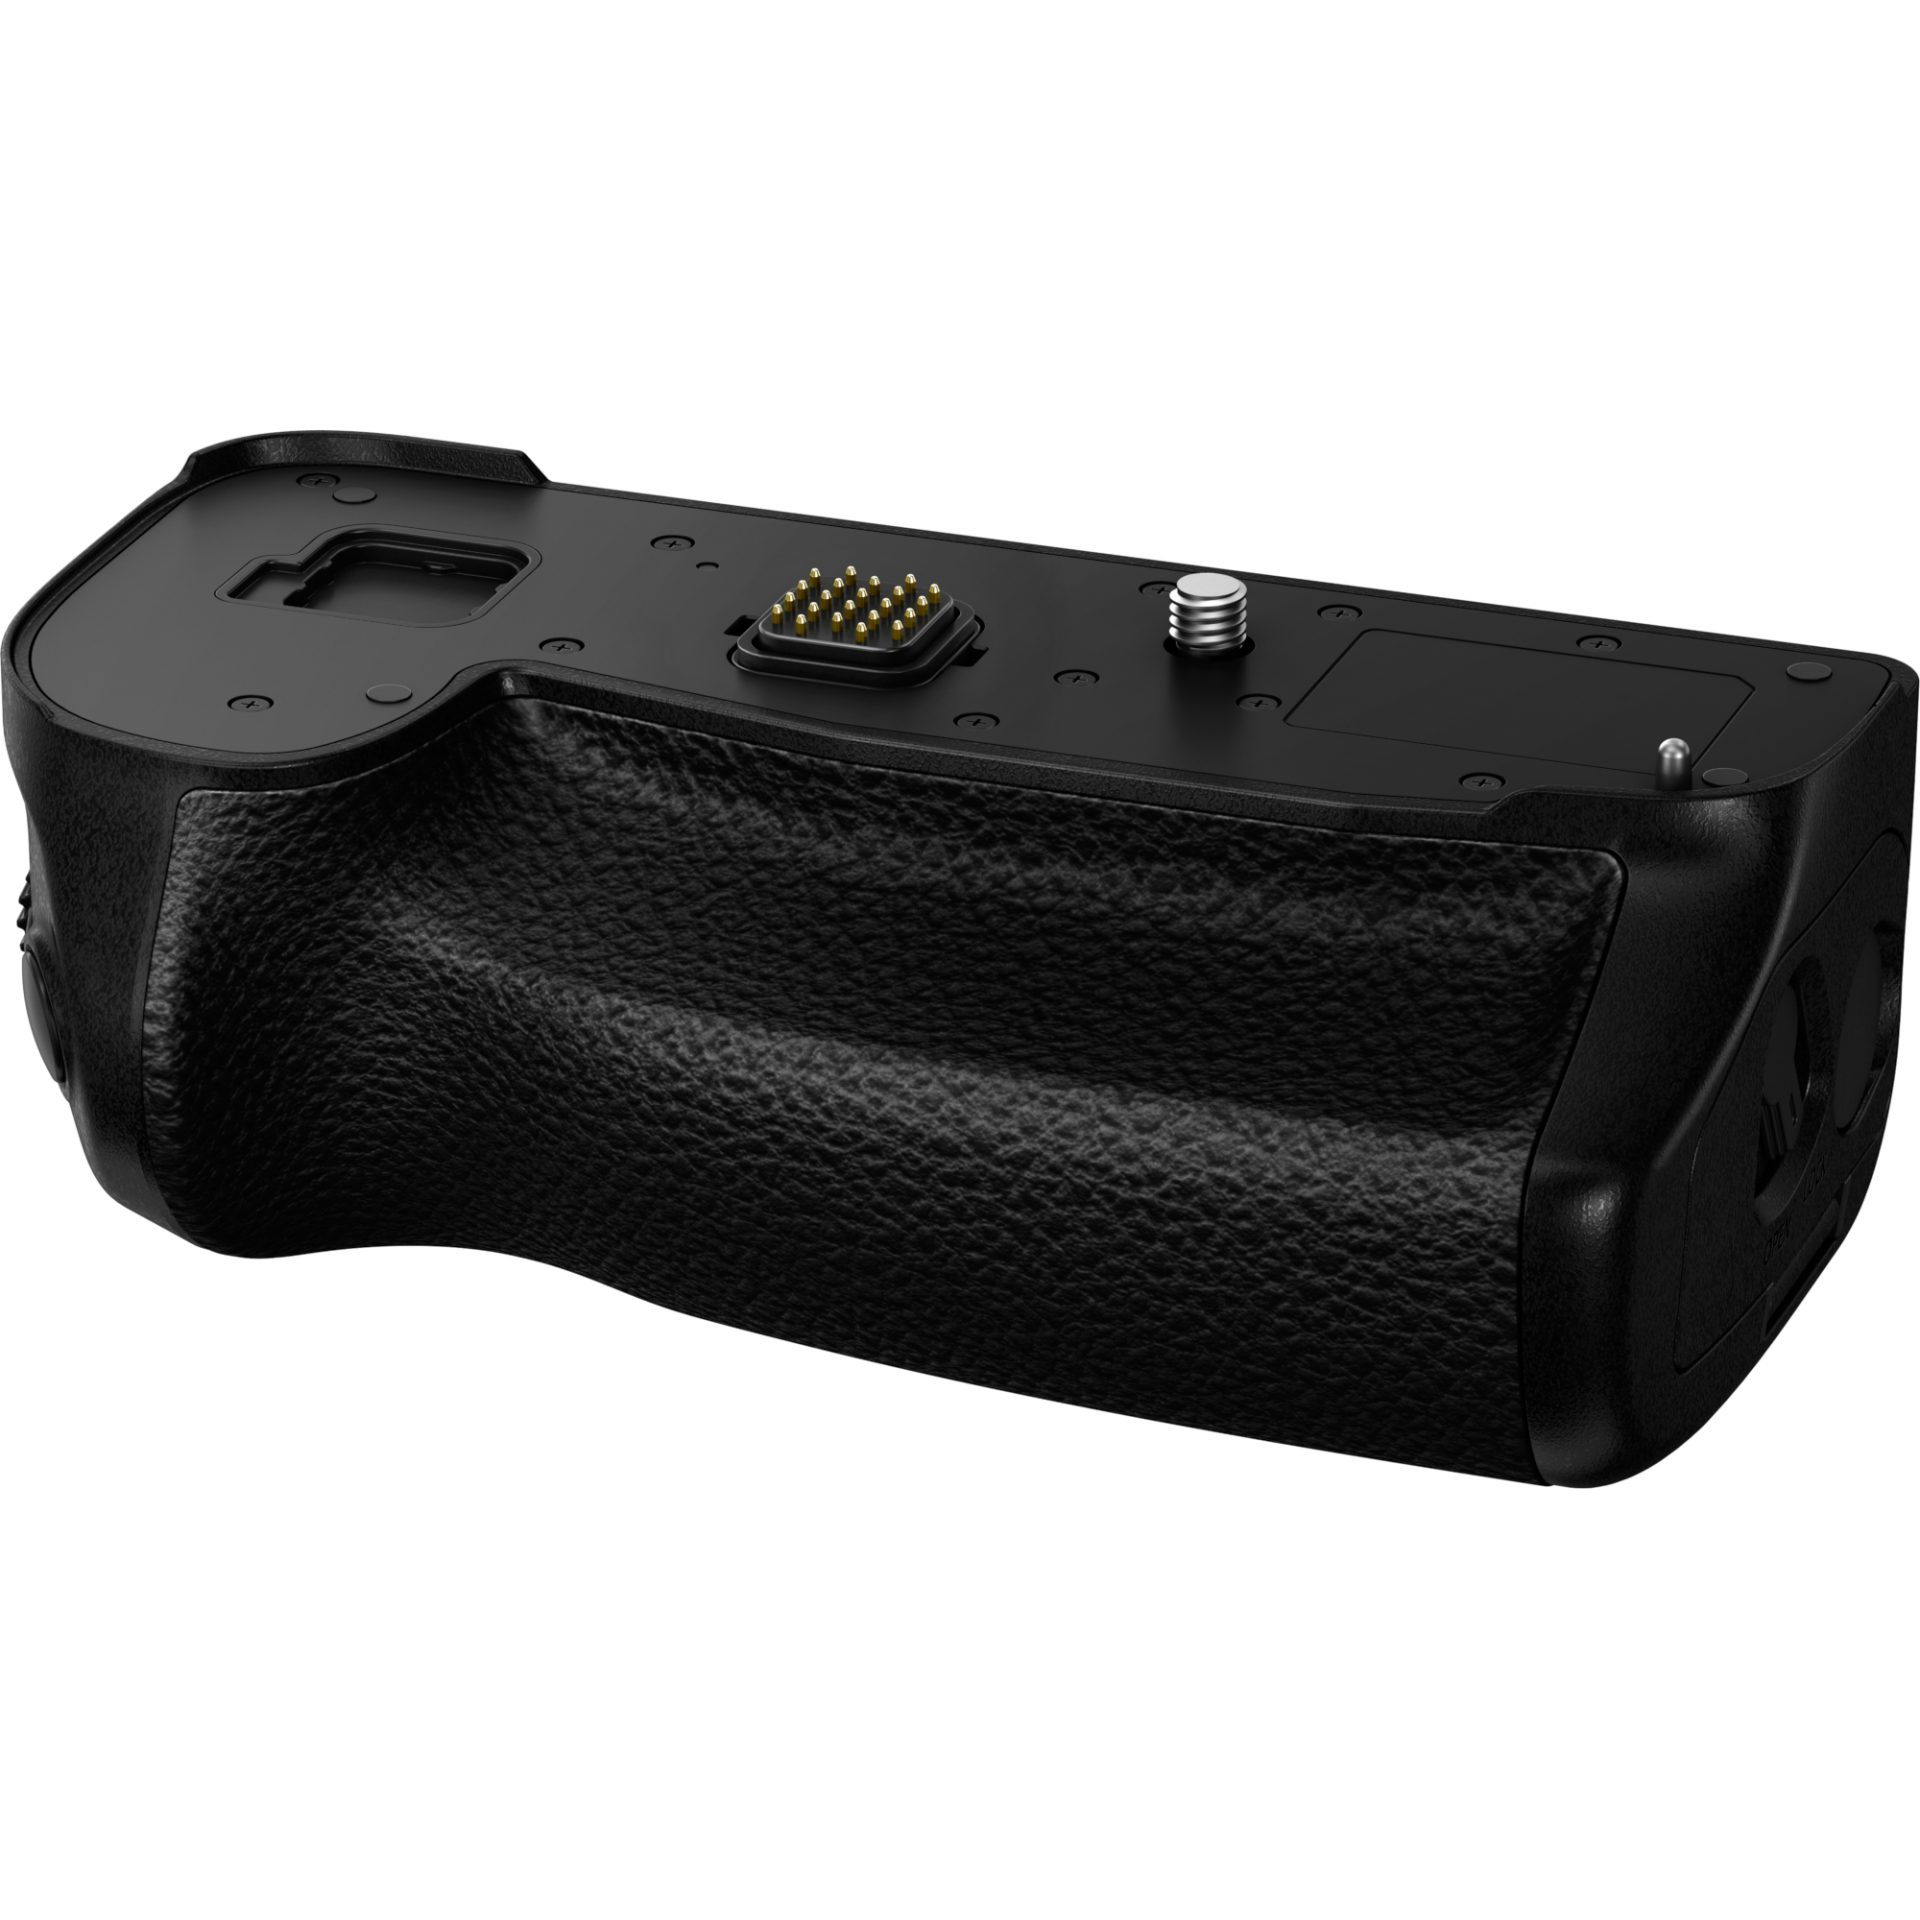 Panasonic DMW-BGG9 DC-G9 battery grip fotoaparátu (prodlužuje výdrž na baterii, odolnost proti stříkající vodě a prachu, pohodlné ovládání), černá